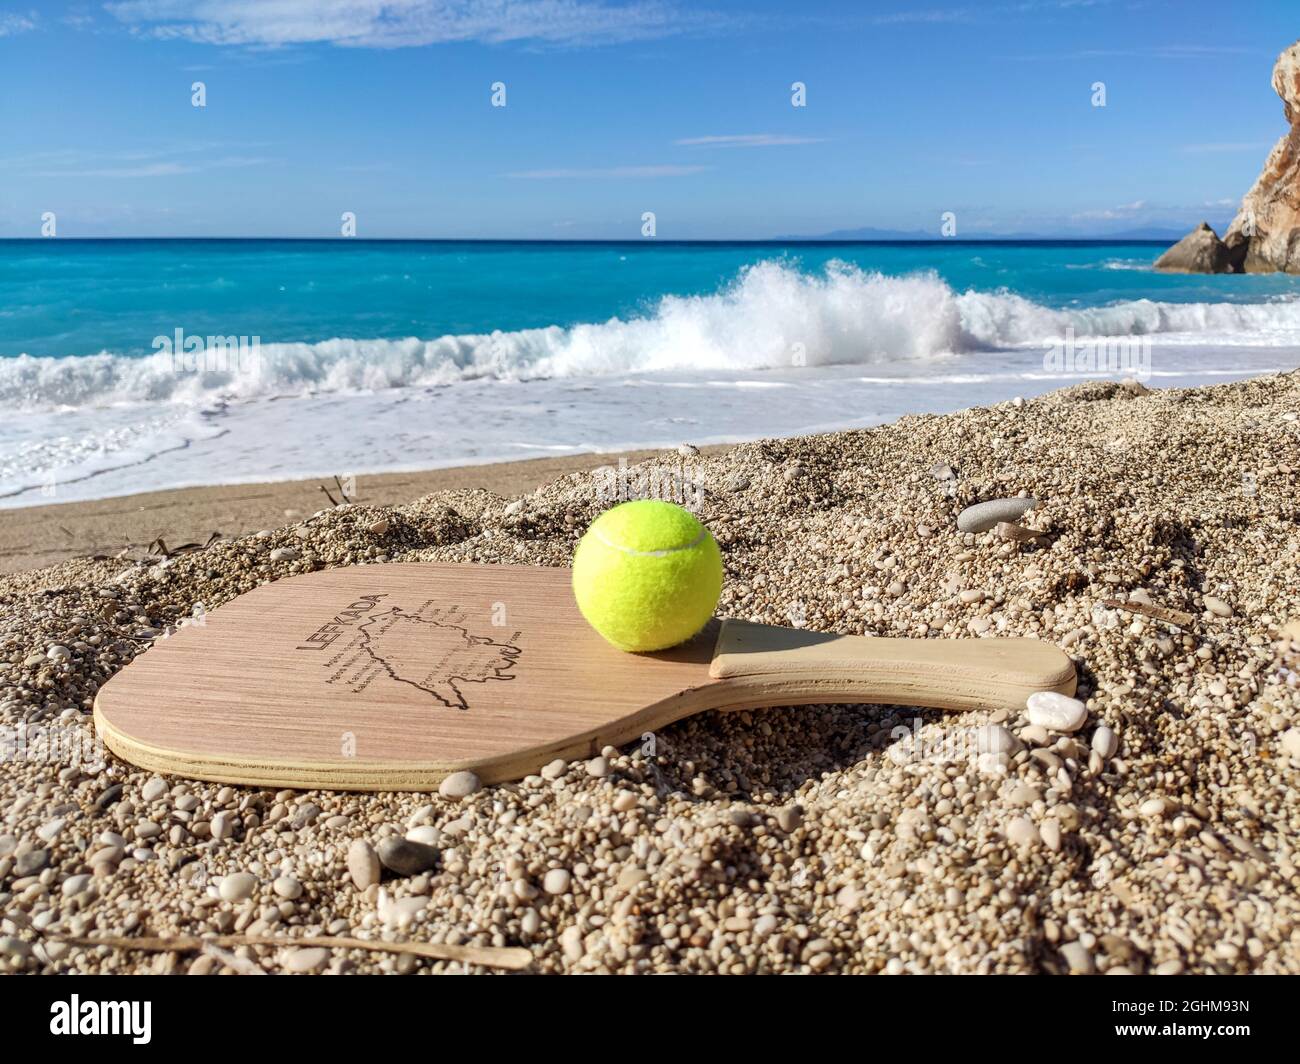 Matkot juego griego de paddle playa de tenis con pelota y raqueta de madera con mapa de la isla Lefkada, Grecia. Equipo deportivo en playa de arena con wa turquesa Foto de stock